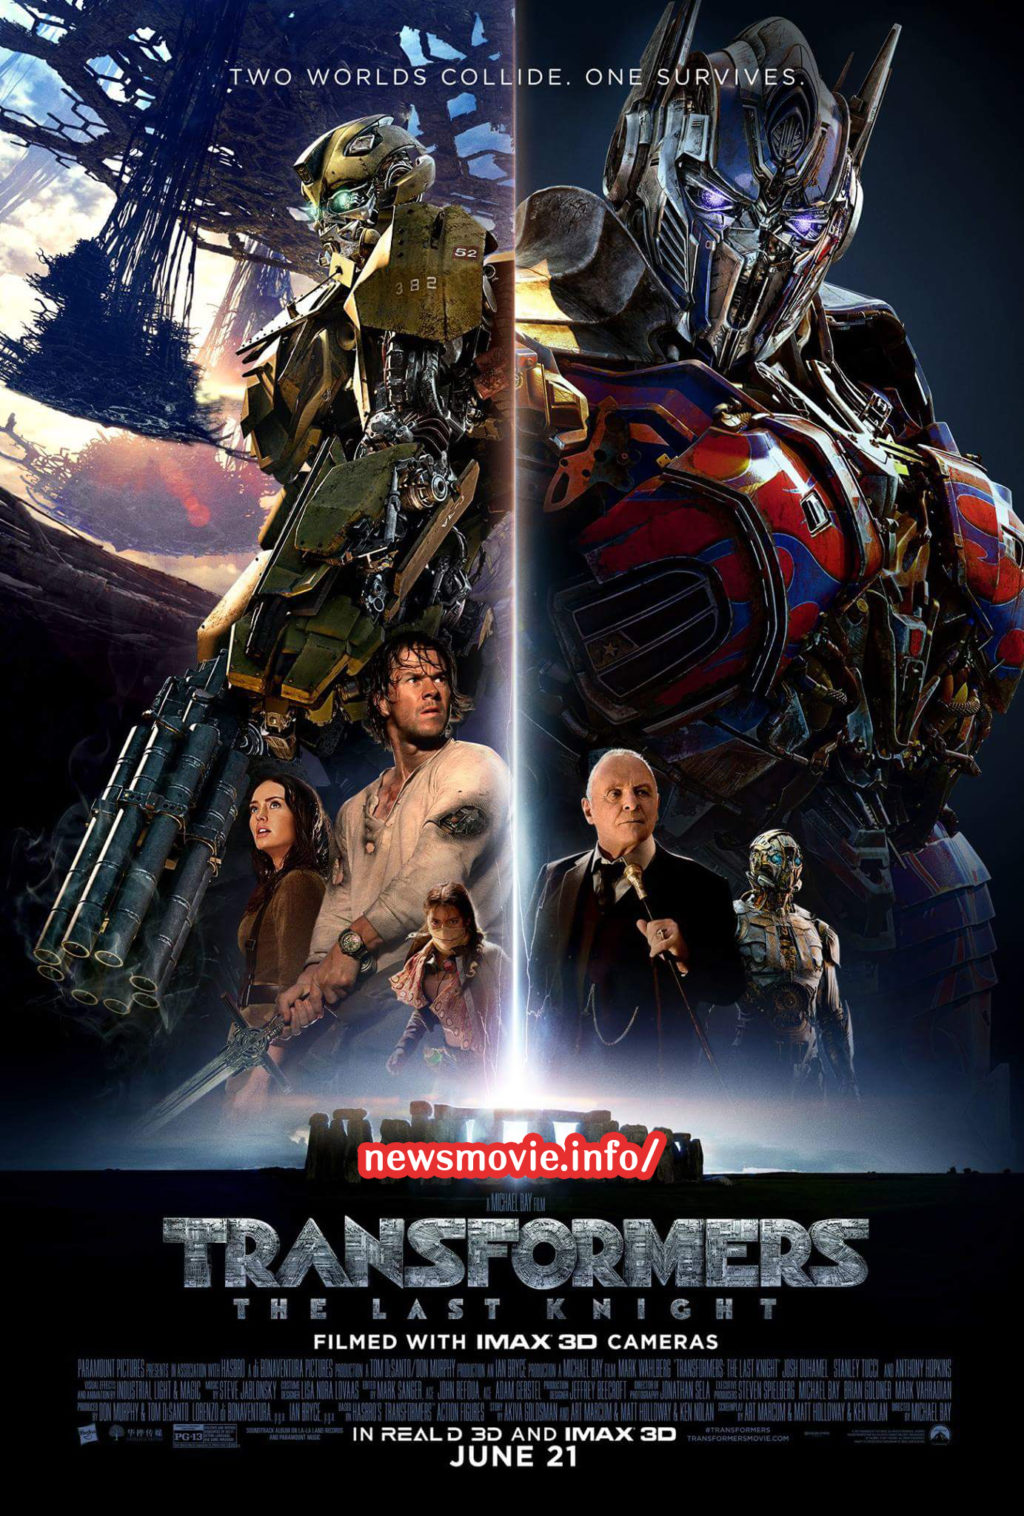 ทรานส์ฟอร์มเมอร์ส 5 (Transformers The Last Knight) รีวิวหนัง